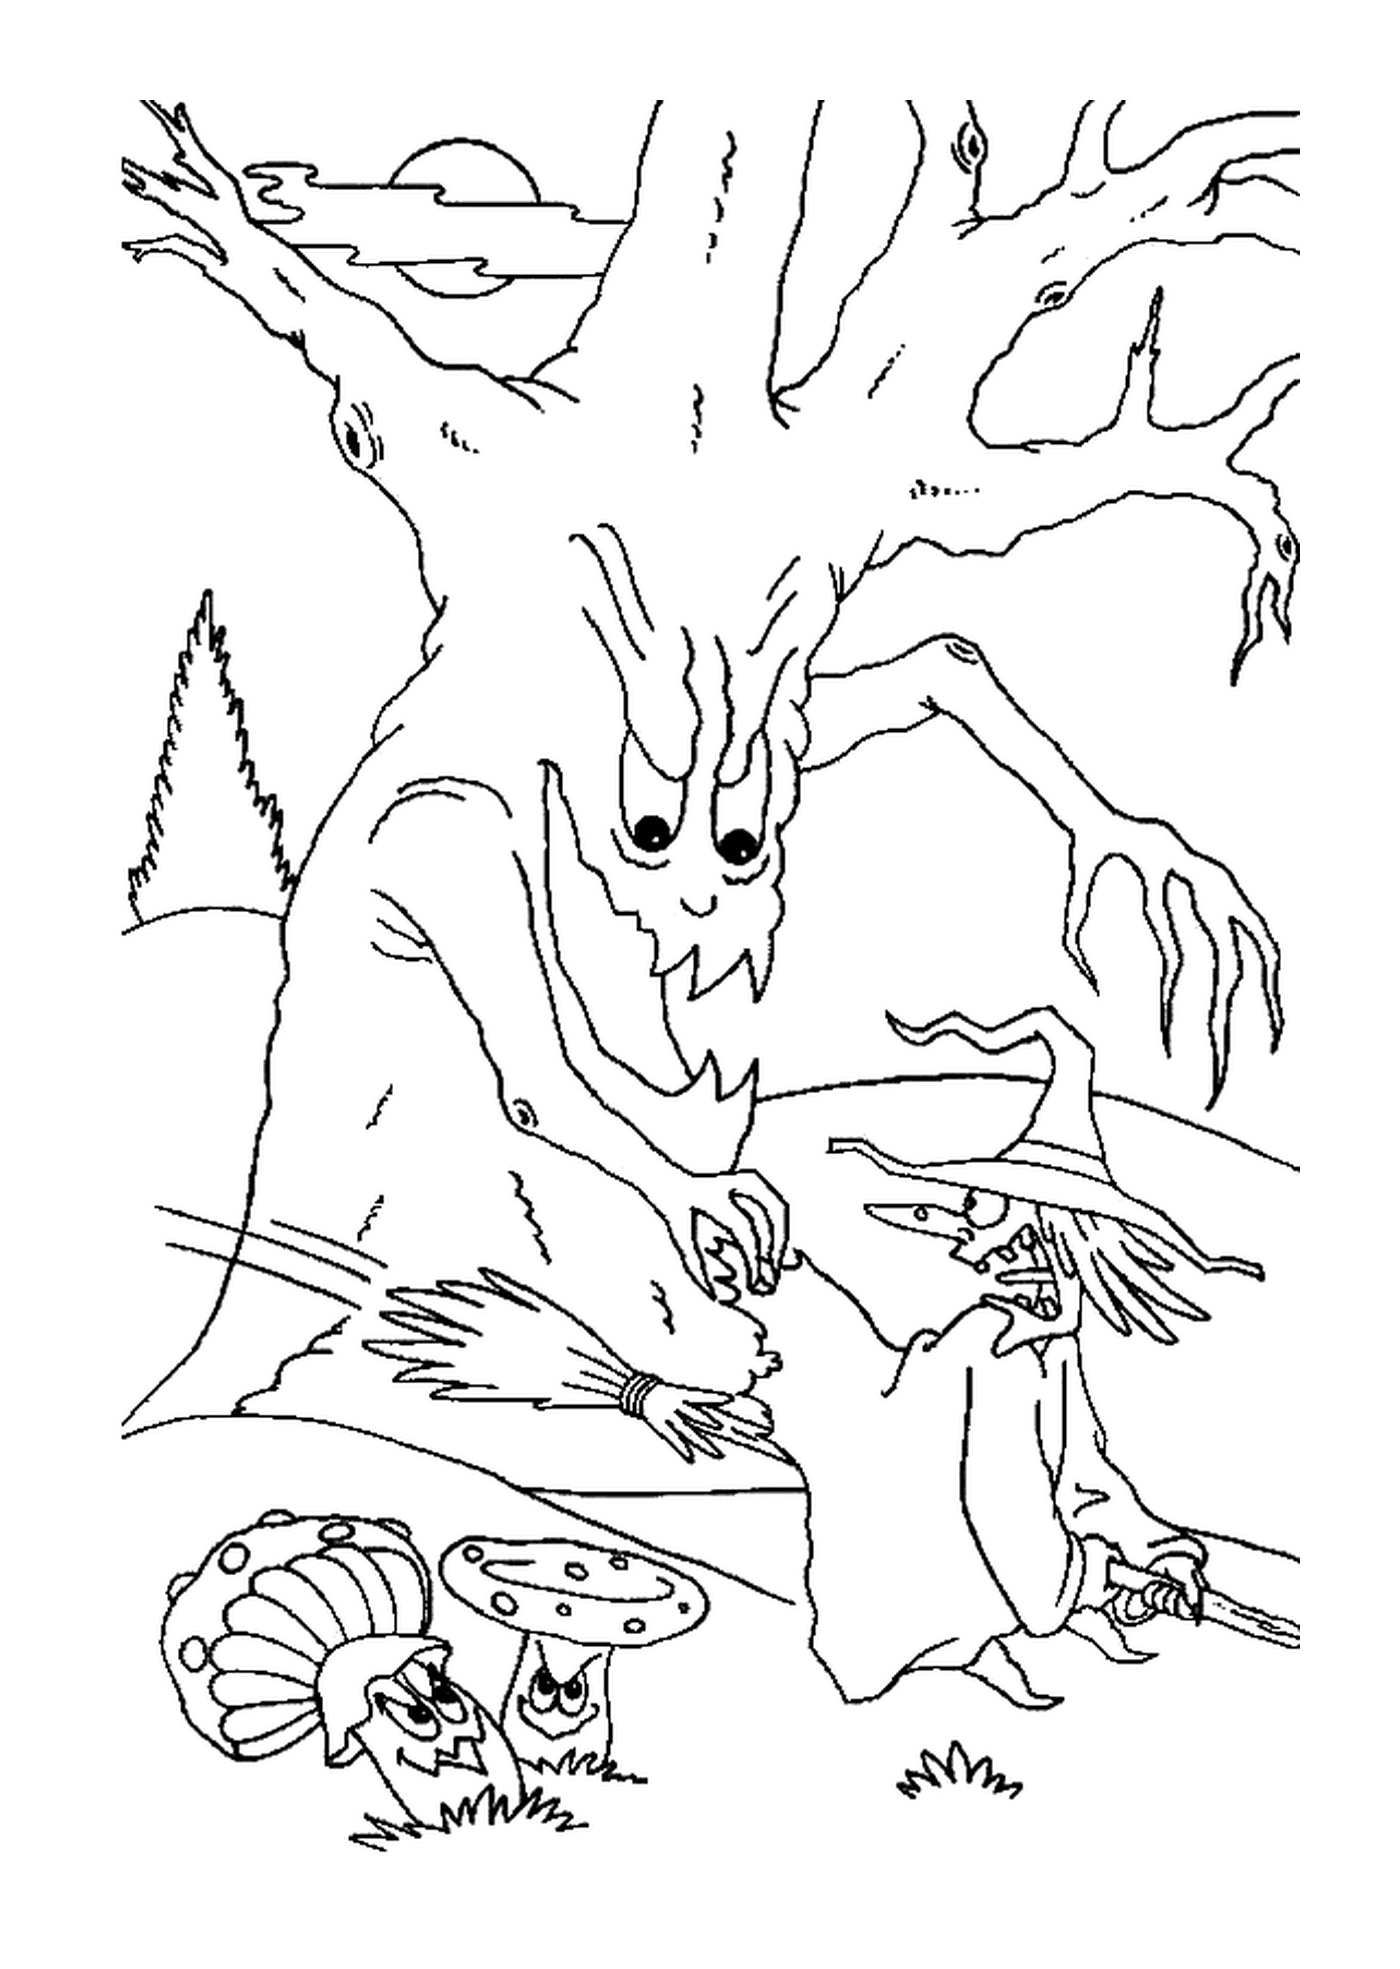  Uma bruxa e uma árvore assustadora 